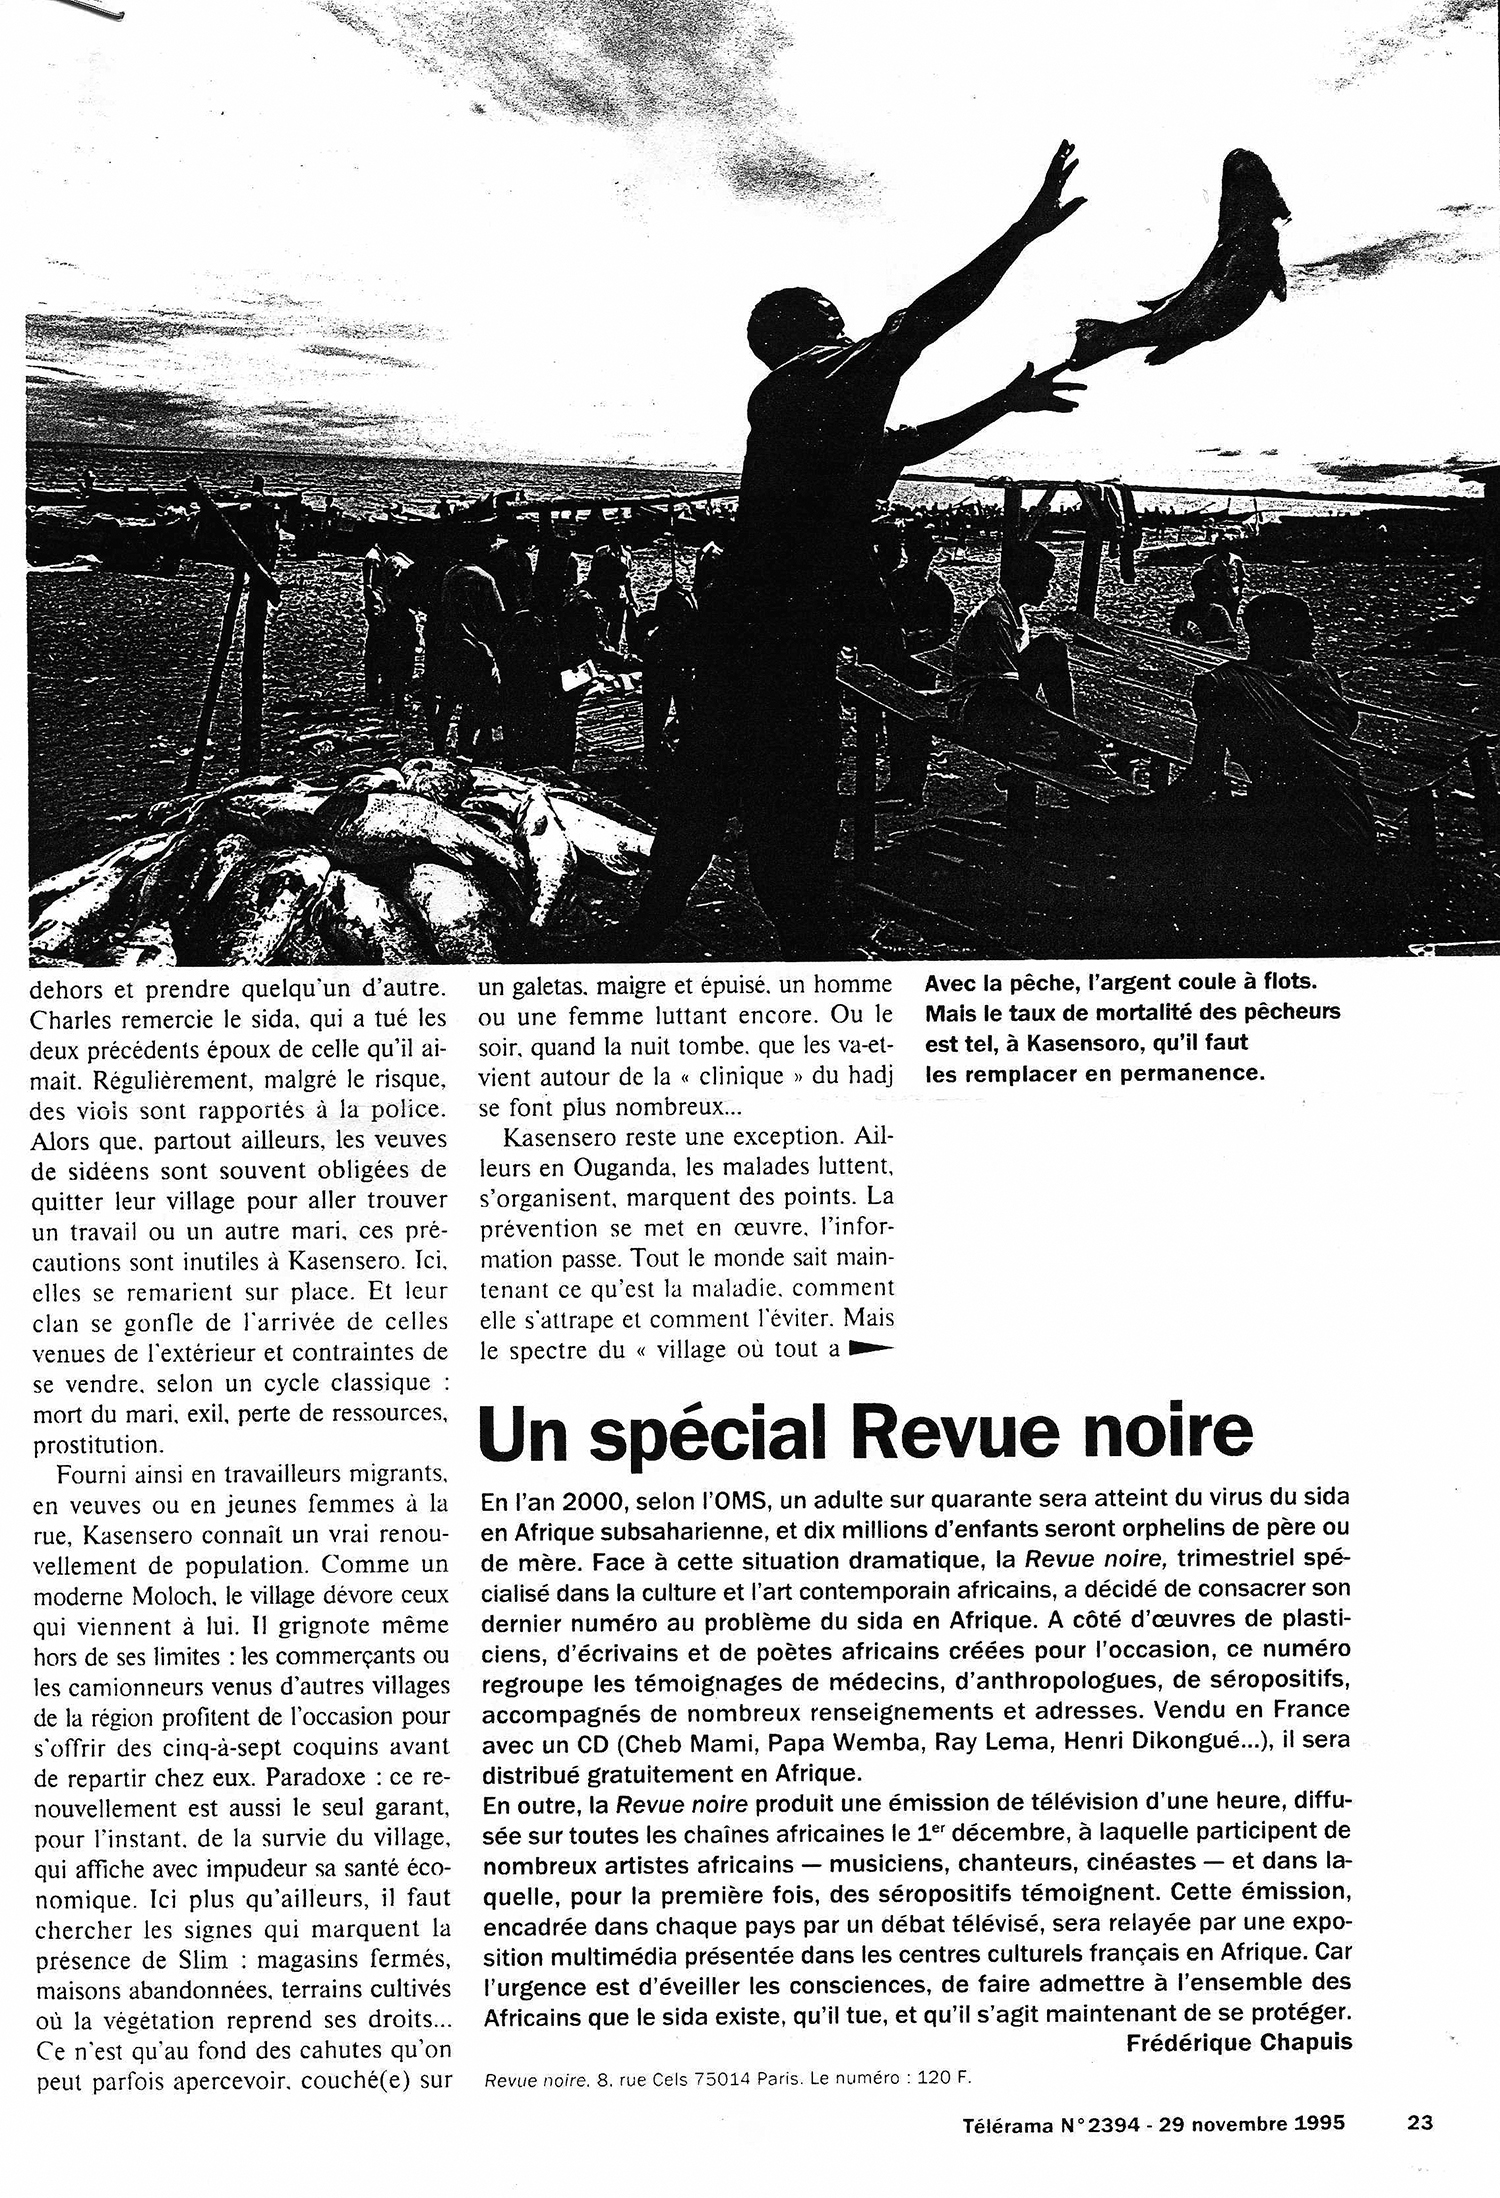 REVUE NOIRE revue de presse: Télérama nov 1995, par Frédérique Chapuis. Spécial Revue Noire RN19: Les artistes africains et le sida